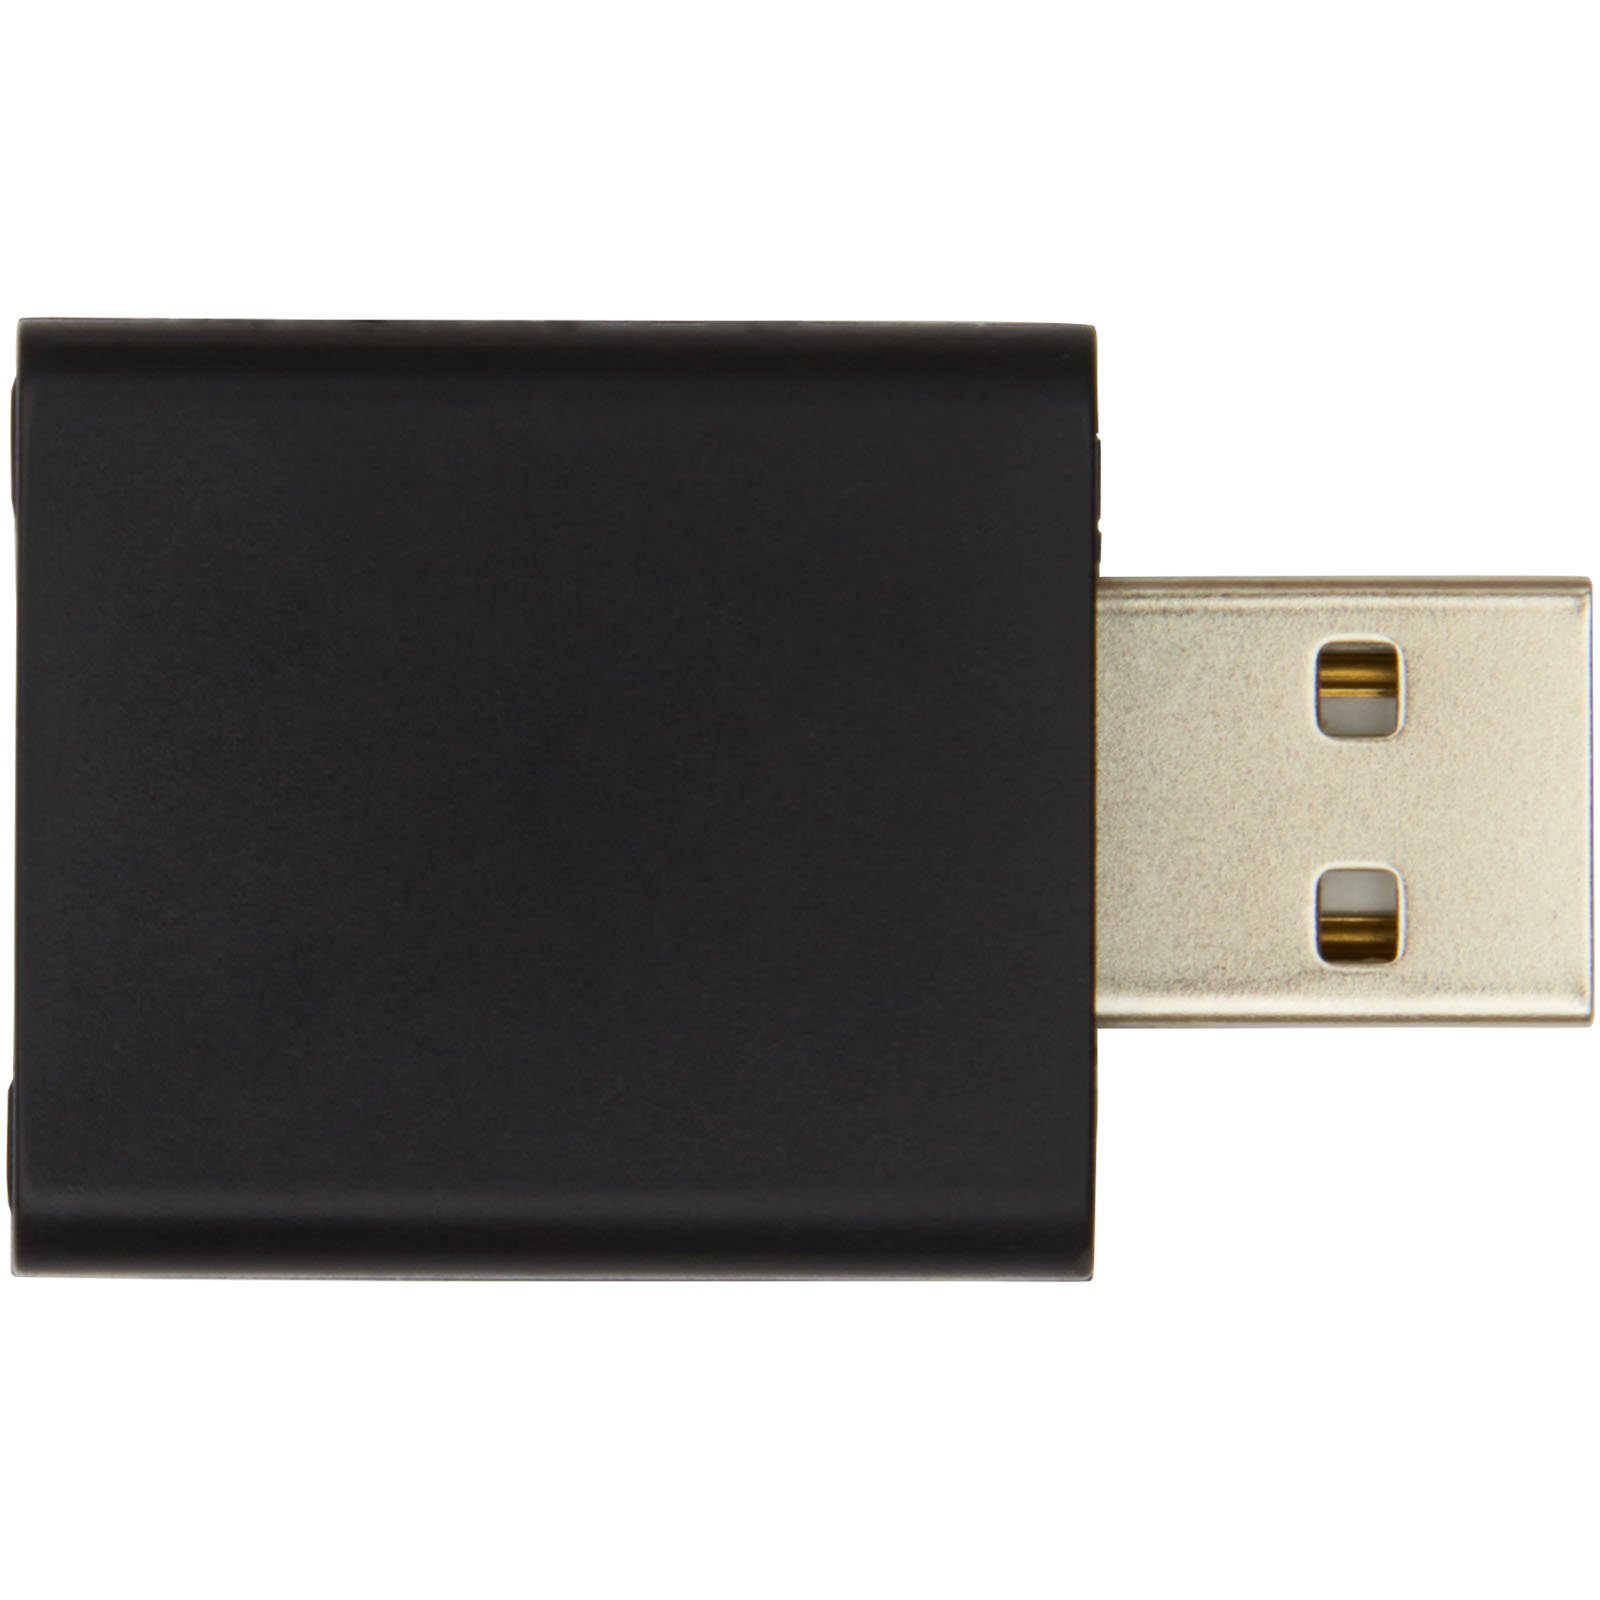 Advertising Computer Accessories - Incognito USB data blocker - 1